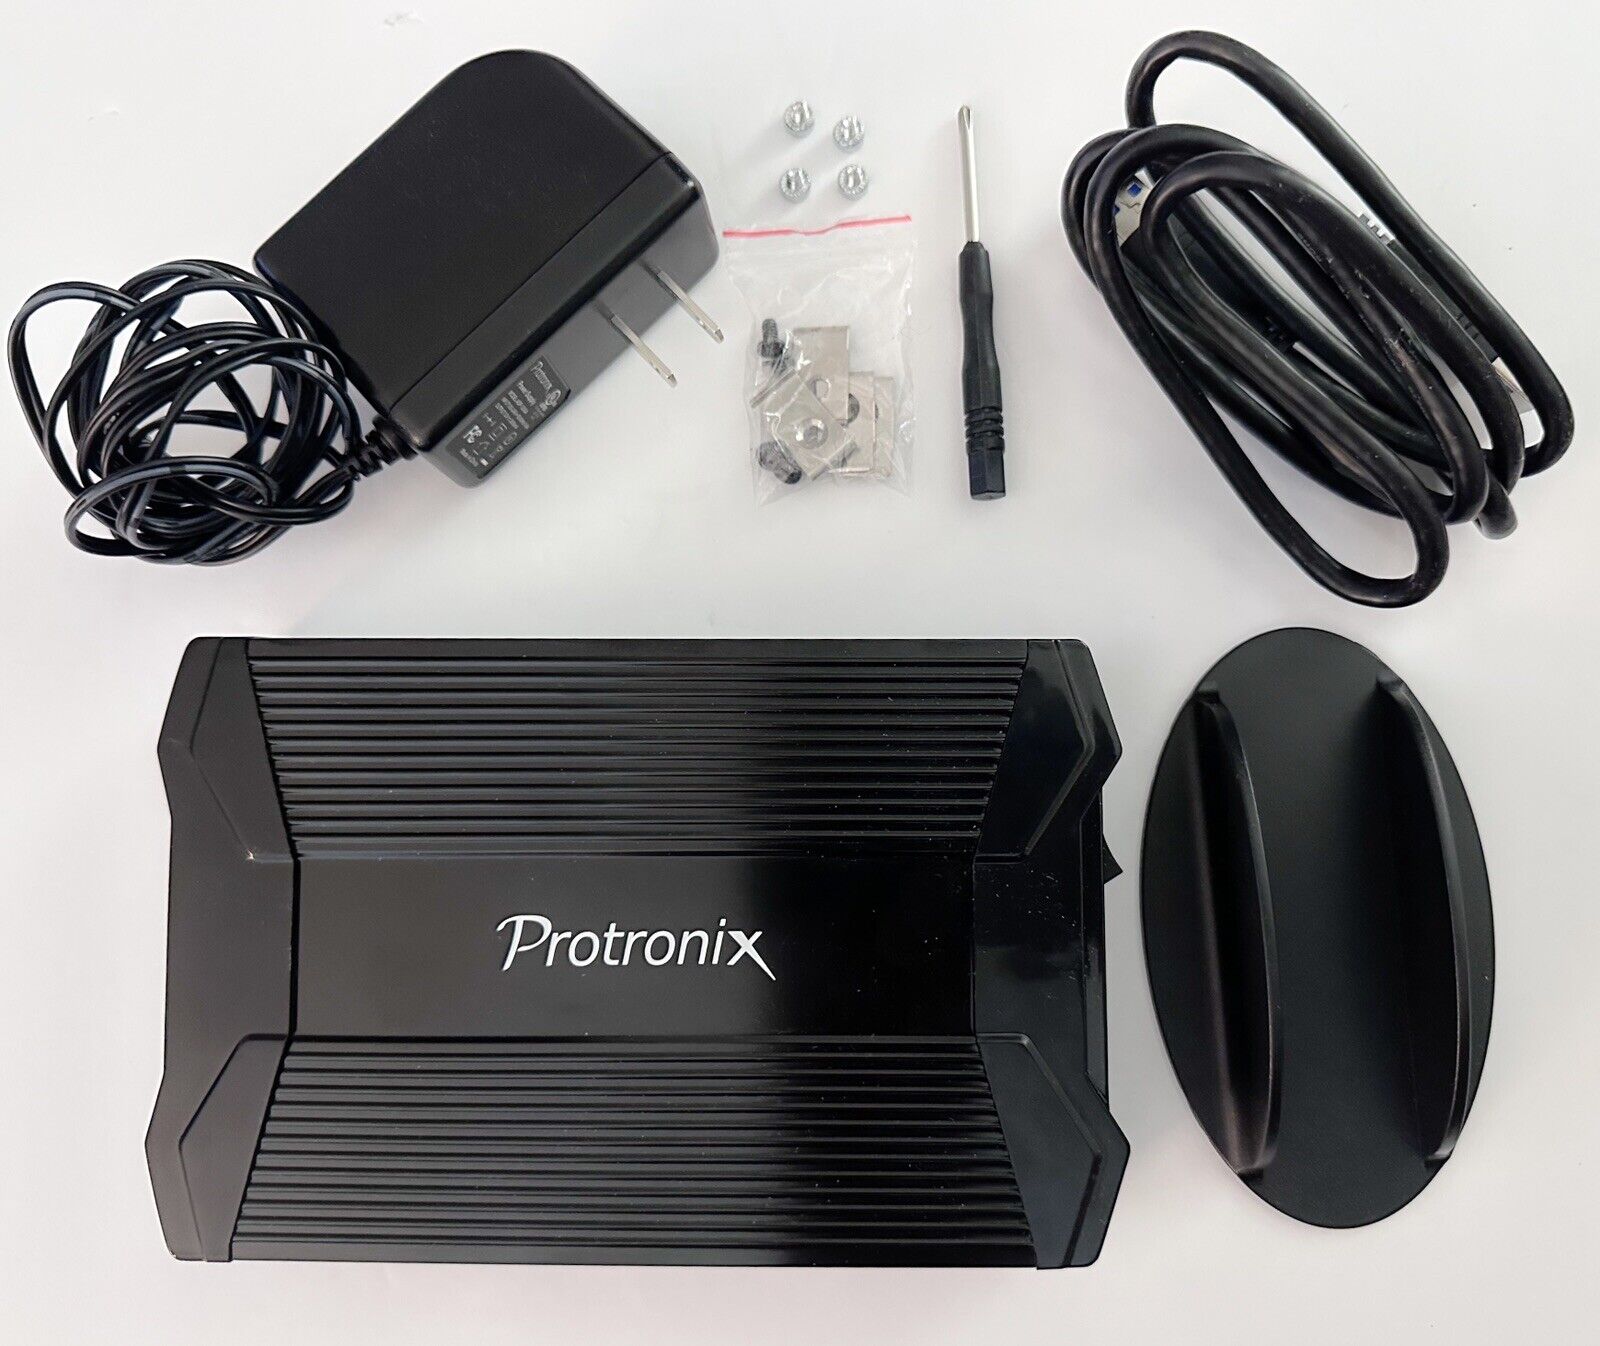 Protronix E35-B USB 3.0 3.5 Inch SATA Hard Drive External Enclosure